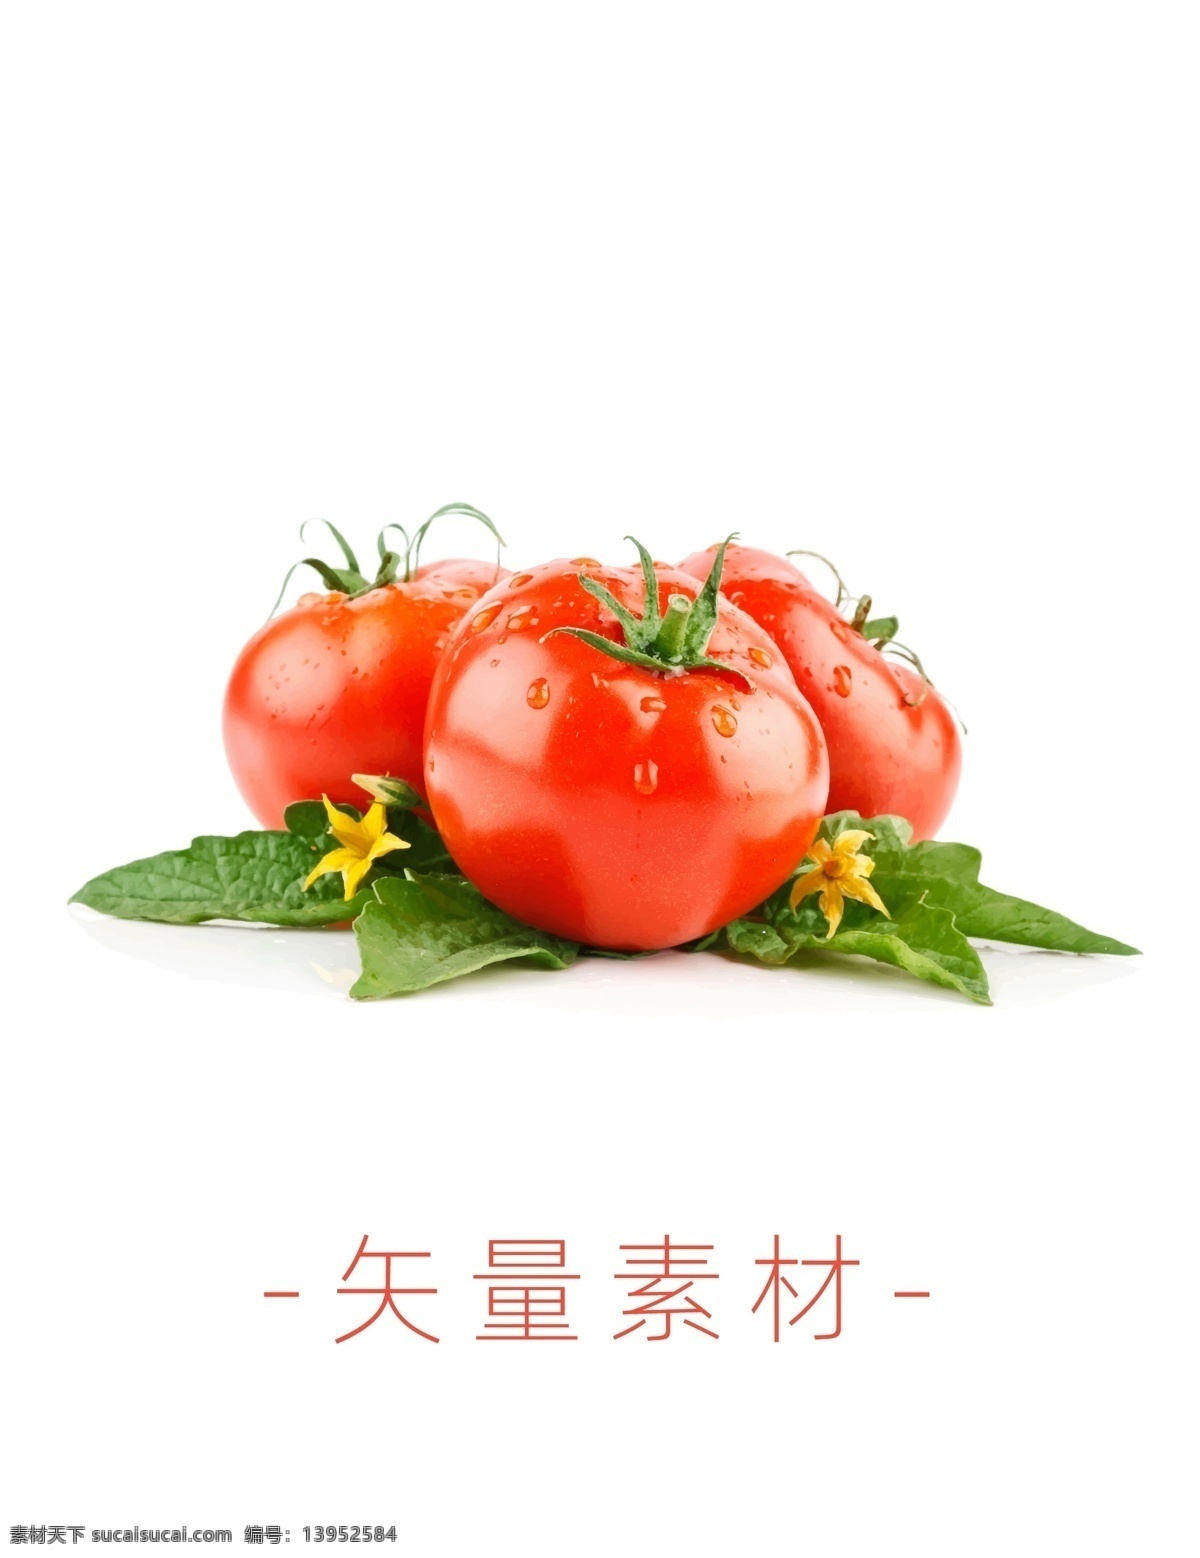 番茄 西红柿 蔬菜 矢量 高清矢量 矢量素材 水果 分层